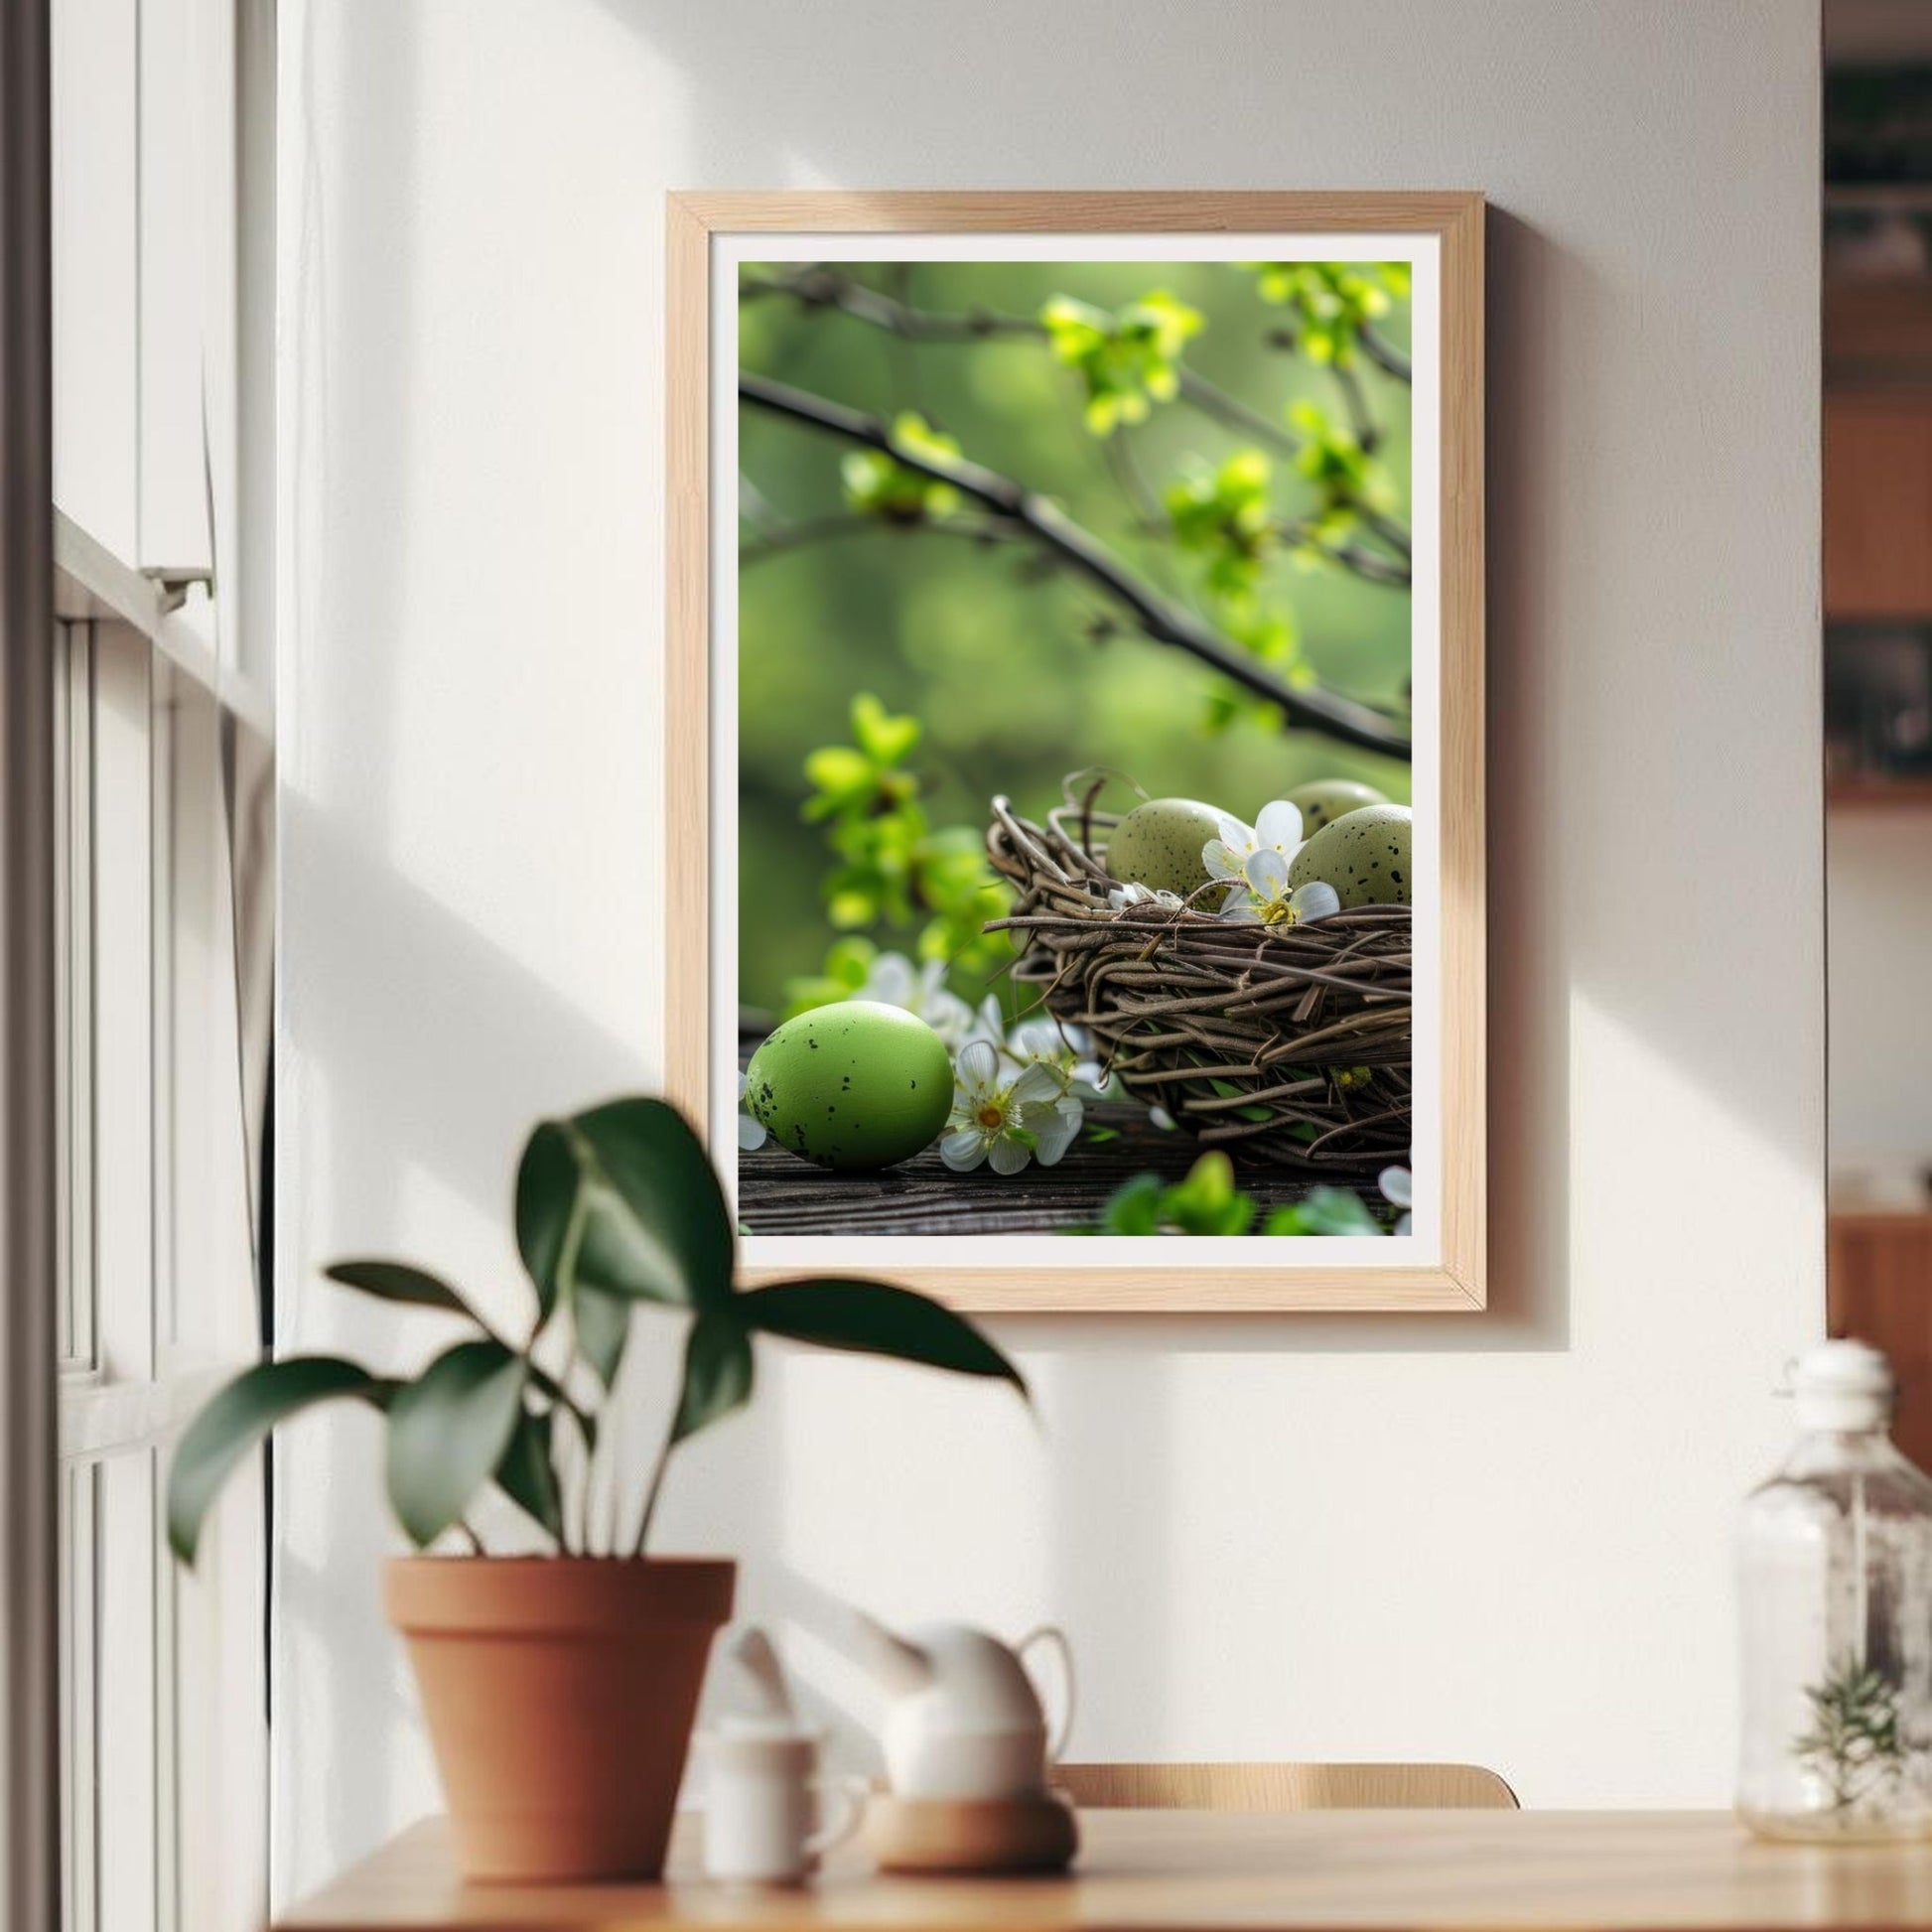 Grafisk illustrasjon som fanger øyeblikket av påskeglede med sine spirer av kvister og et koselig reir fylt med de vakreste egg. Illustrasjonen viser plakat i en ramme på en vegg.